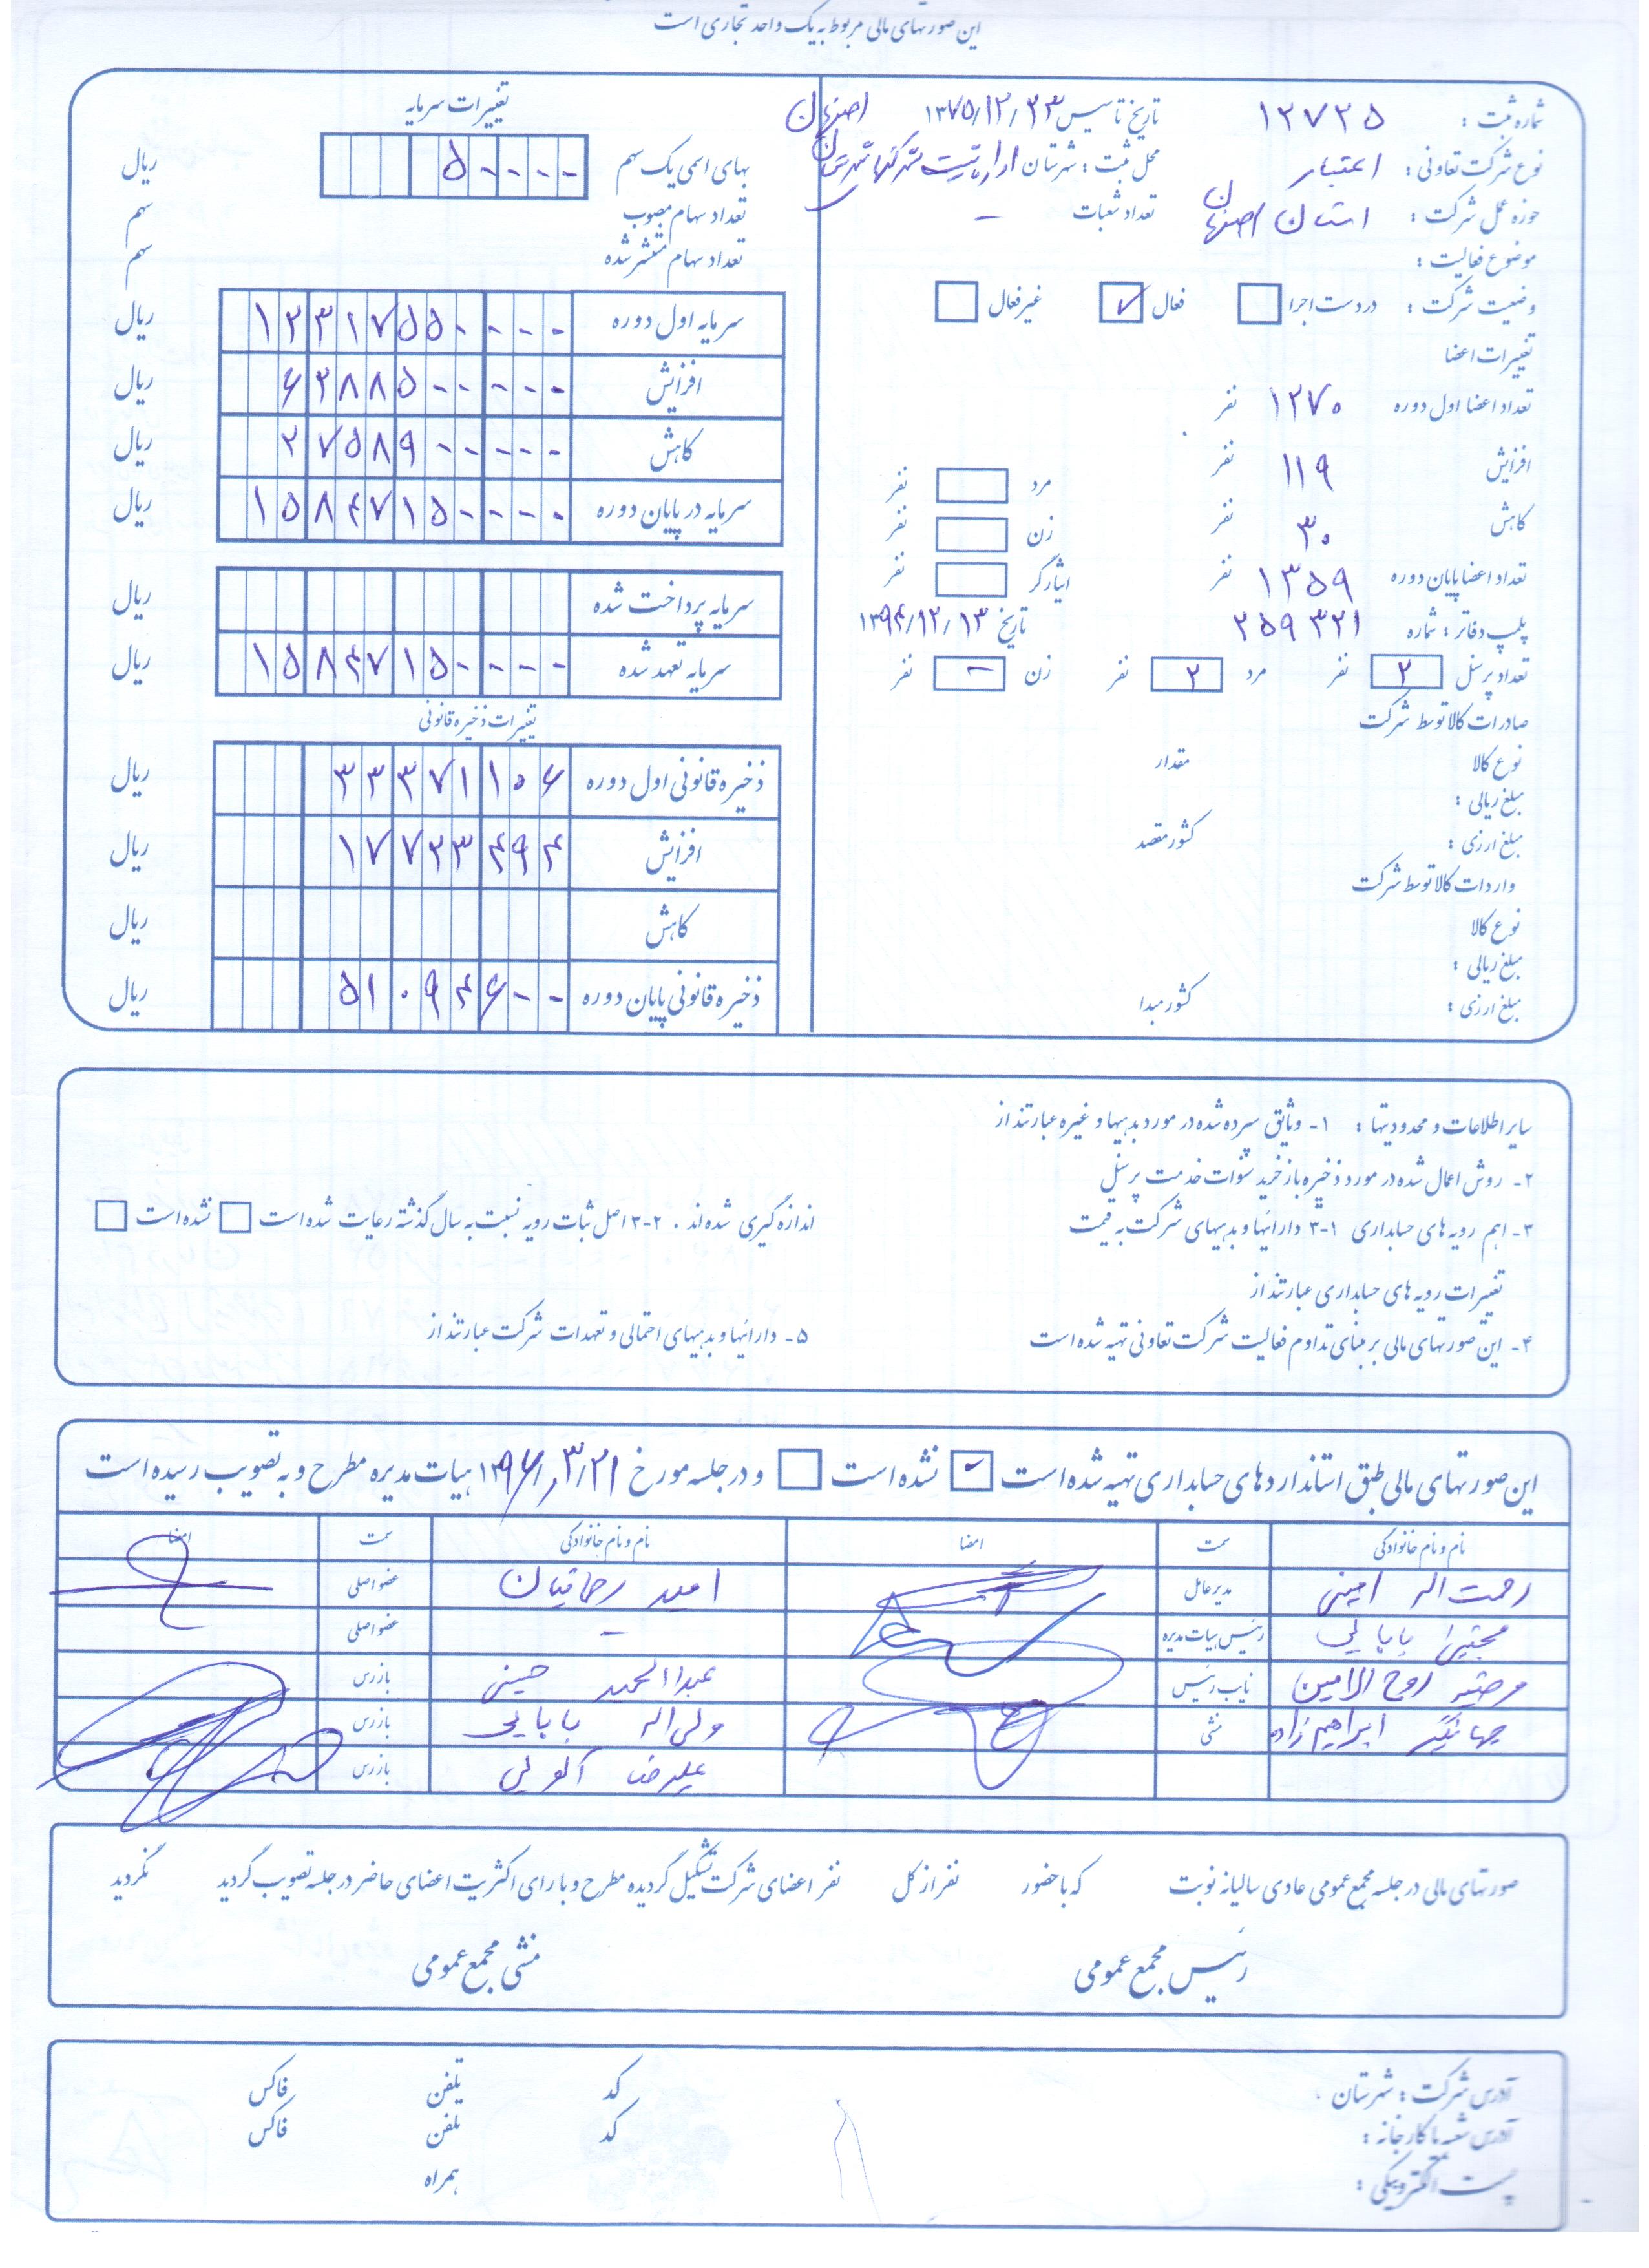 صورت حساب های مالی شرکت تعاونی اعتبار کارکنان بهزیستی استان اصفهان